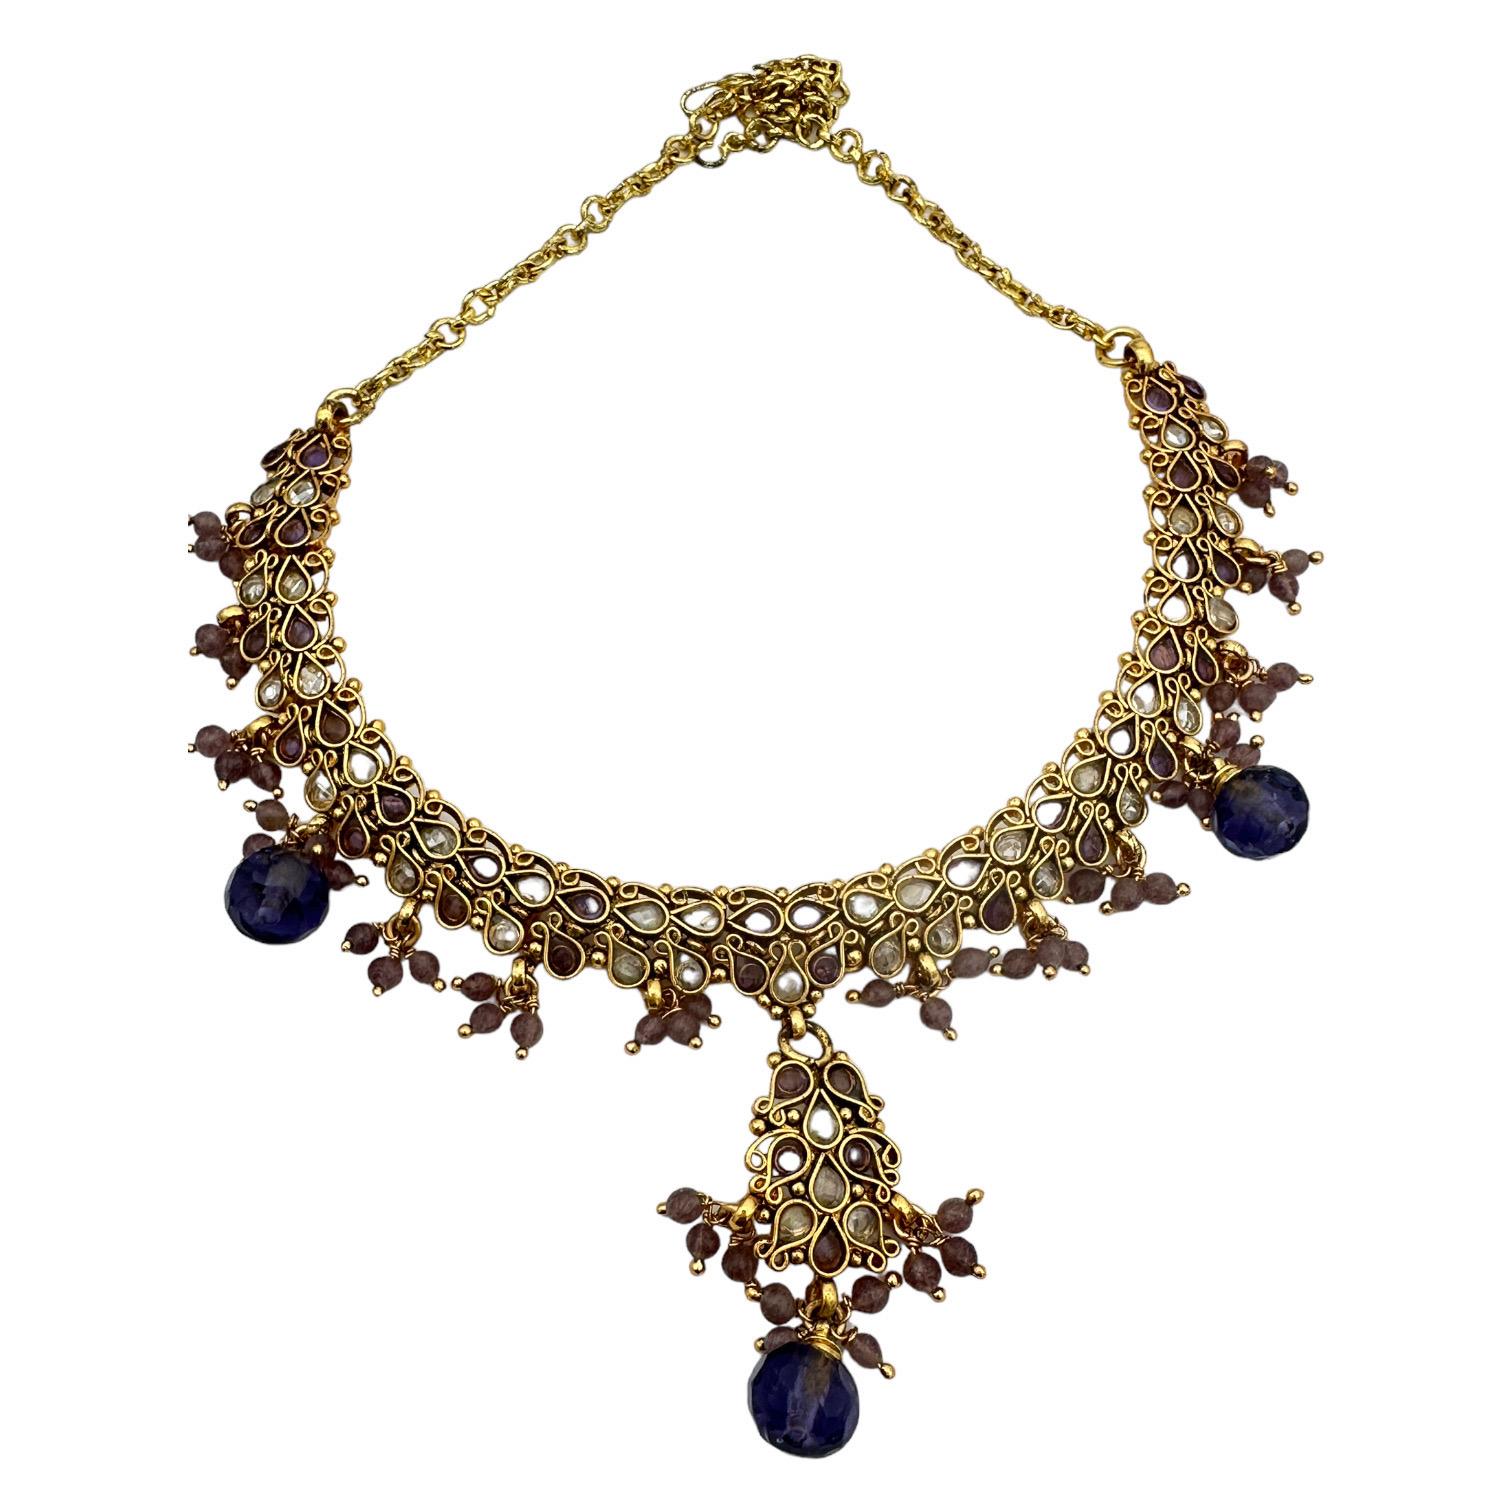  Verleihen Sie Ihrem Look mit der ägyptischen Halskette einen Hauch von Luxus. Dieses verschnörkelte Halsband zeichnet sich durch ein exquisites, handgefertigtes Design aus, das durch die Verwendung von Farbe zu einem wahrhaft einzigartigen Stück